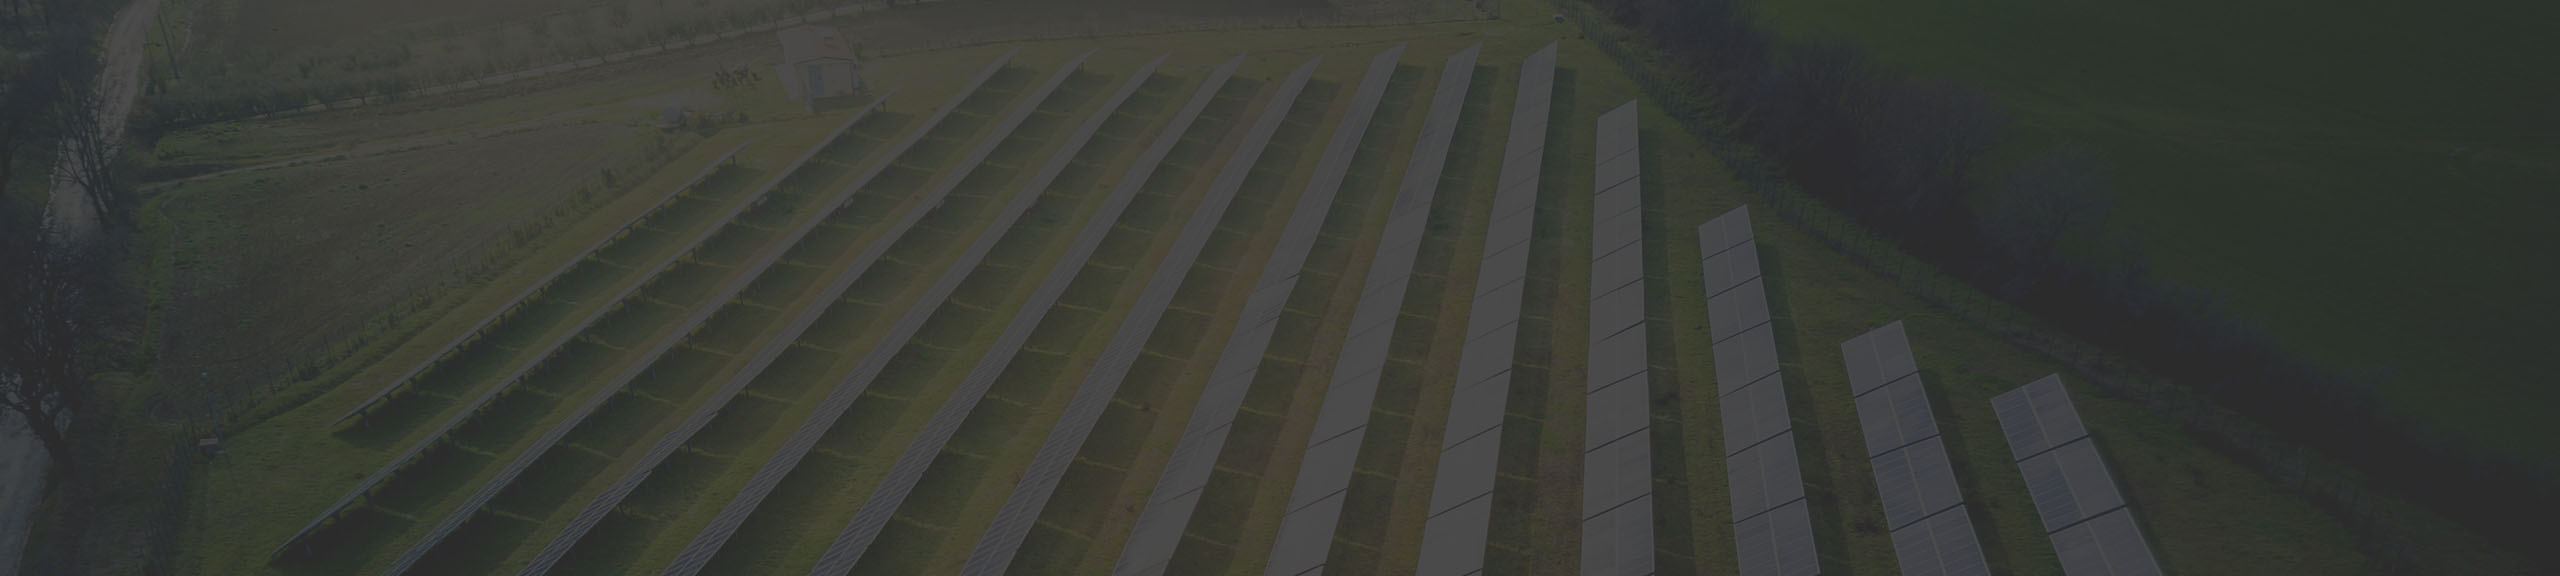 Um grande campo verde com fileiras de painéis solares quadrados prateados